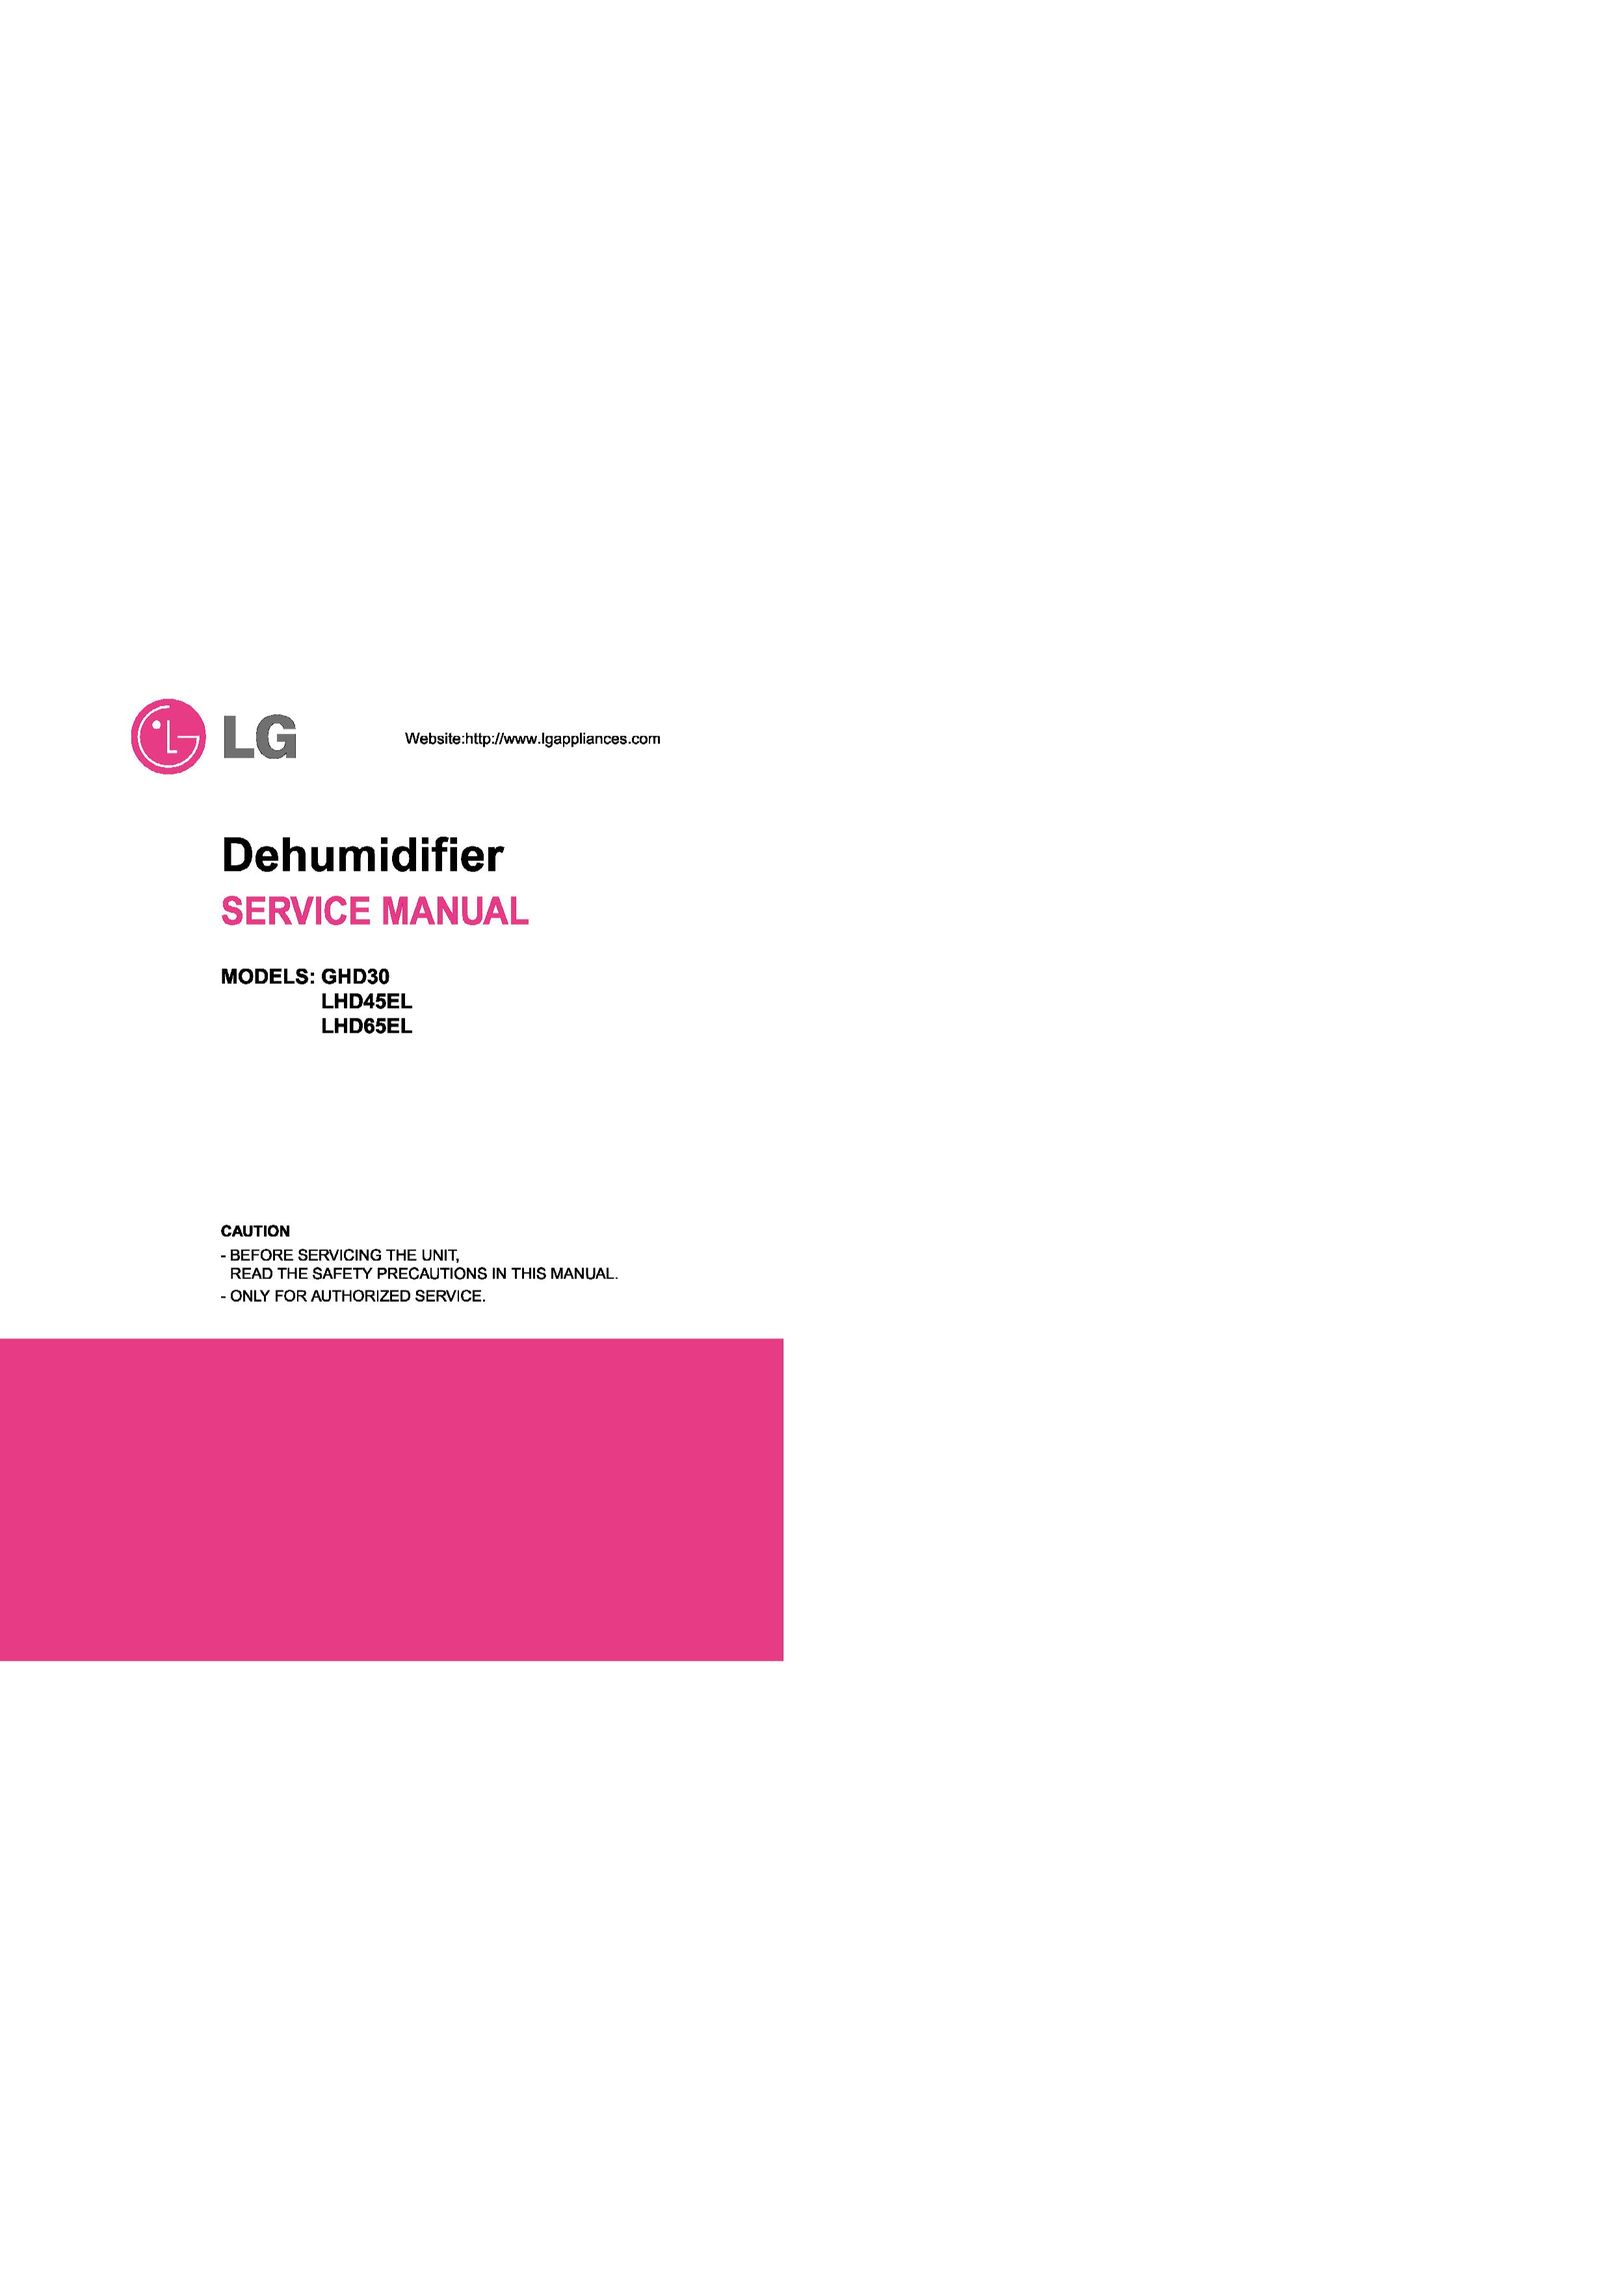 LG Electronics LHD65EL Dehumidifier User Manual